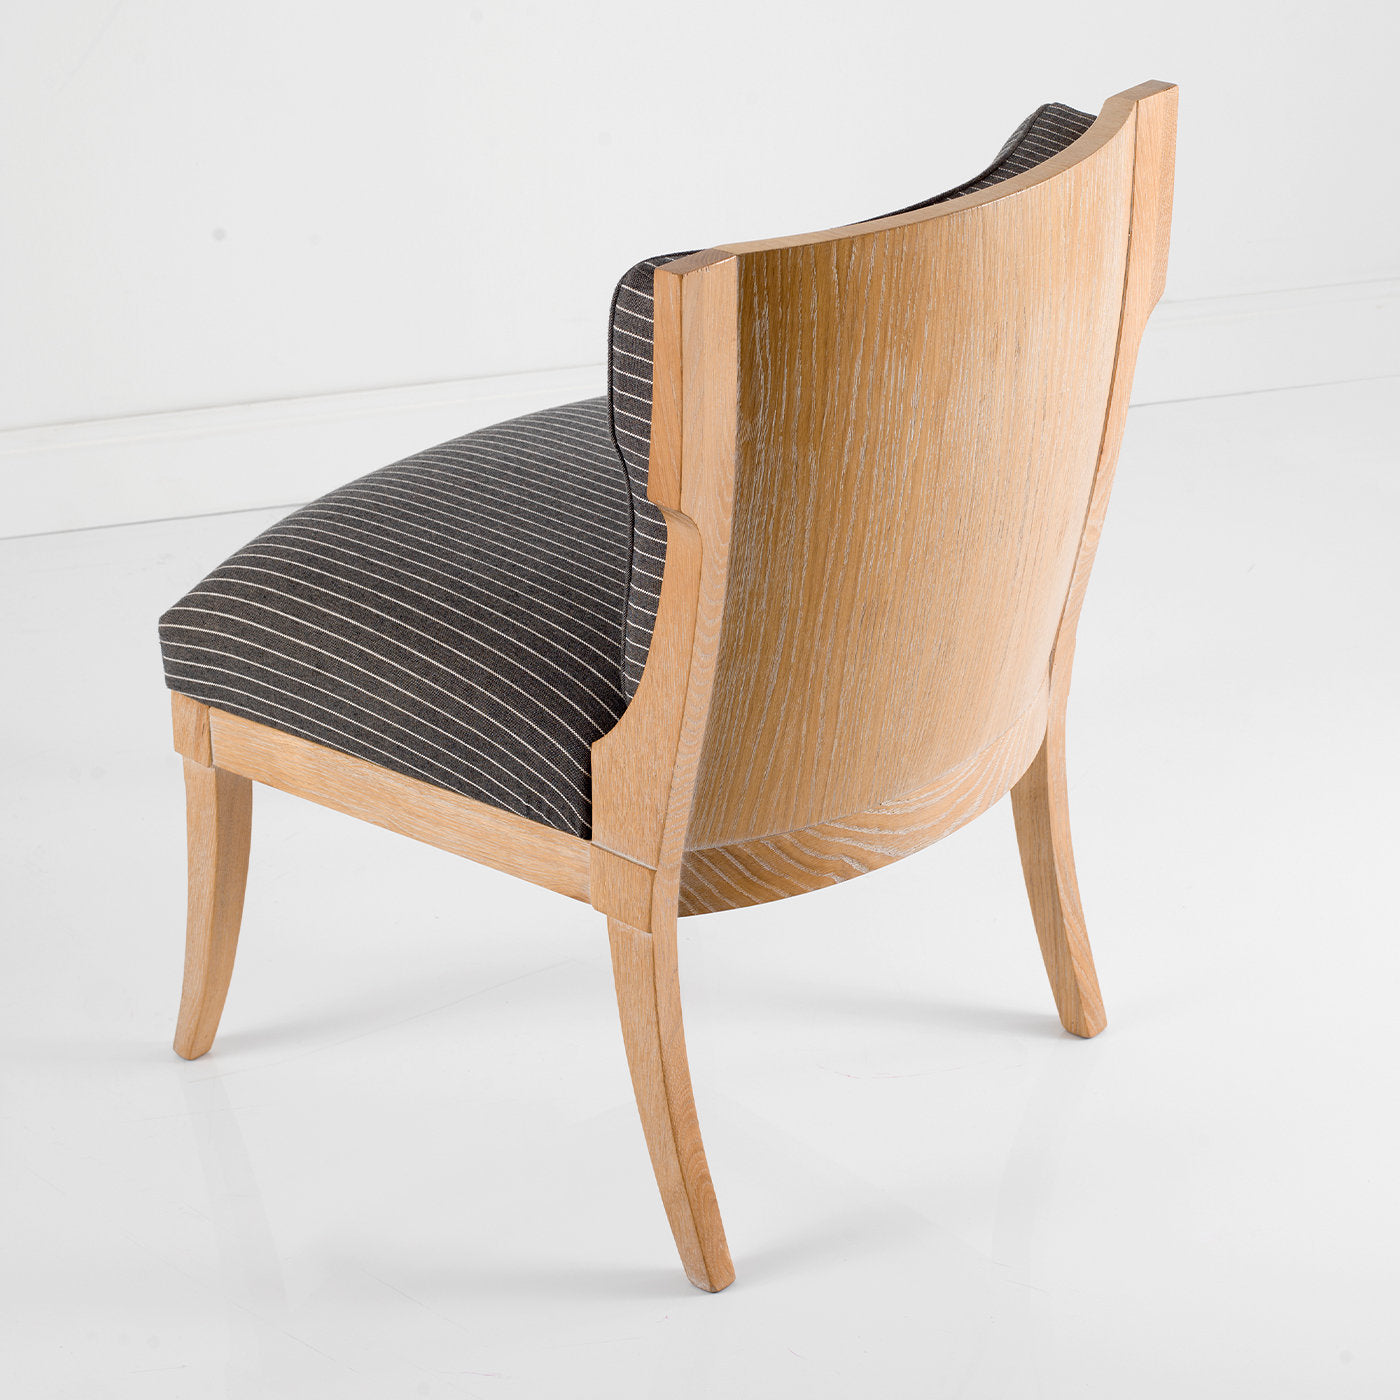 Ergonomic Chair by Michele Bonan - Alternative view 1